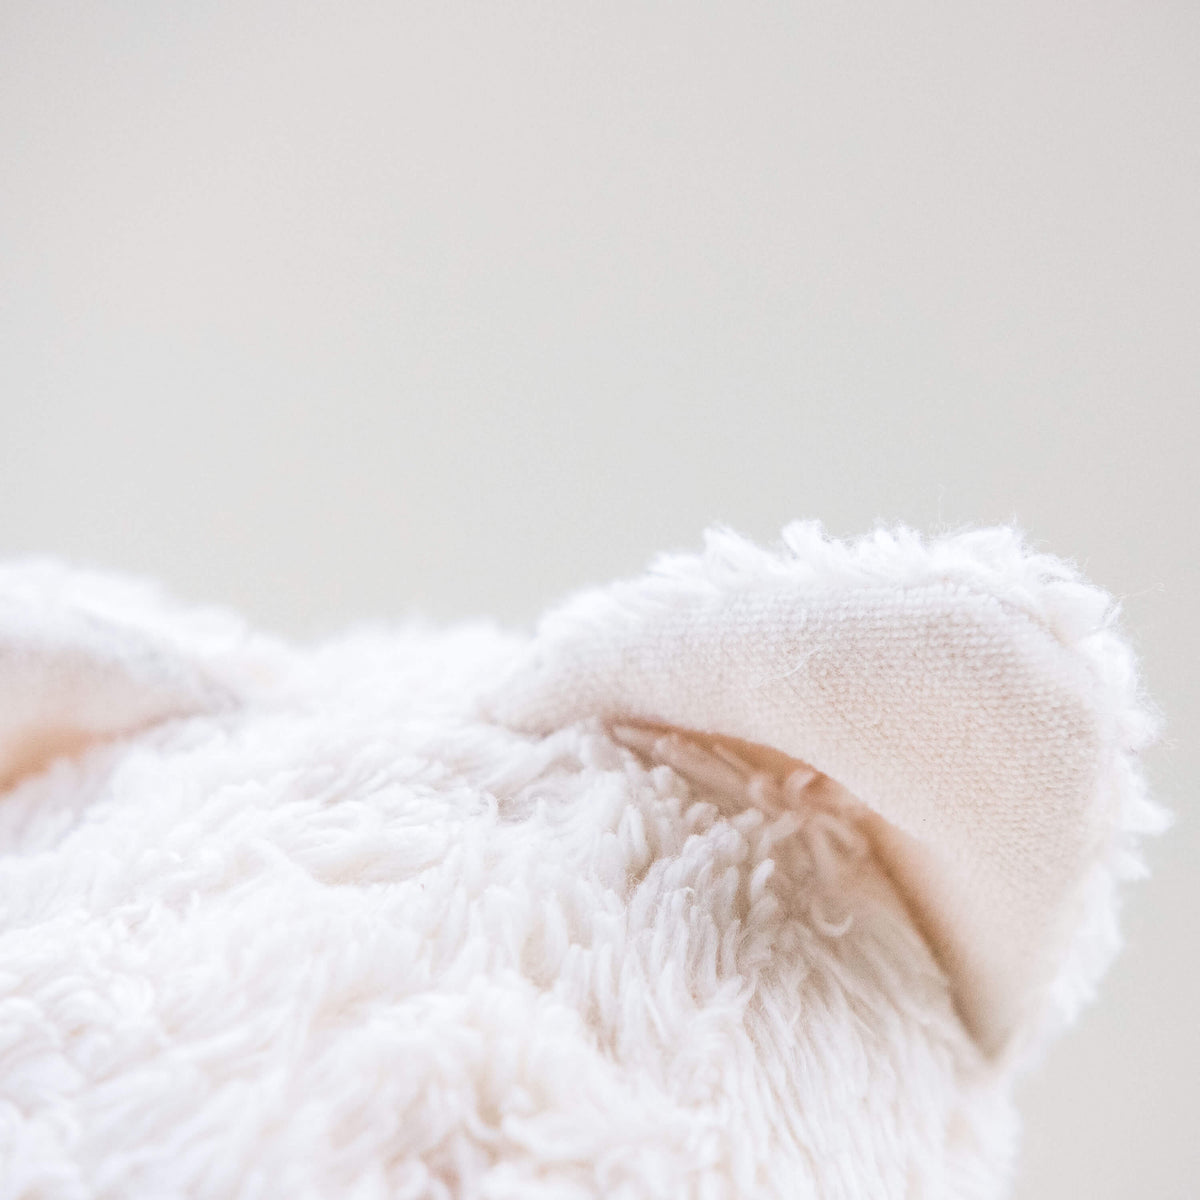 Vista de detalle del gato Max. Muñeco de peluche hecho a mano con telas y relleno de algodón orgánico y ecológico. Tejidos super suaves.